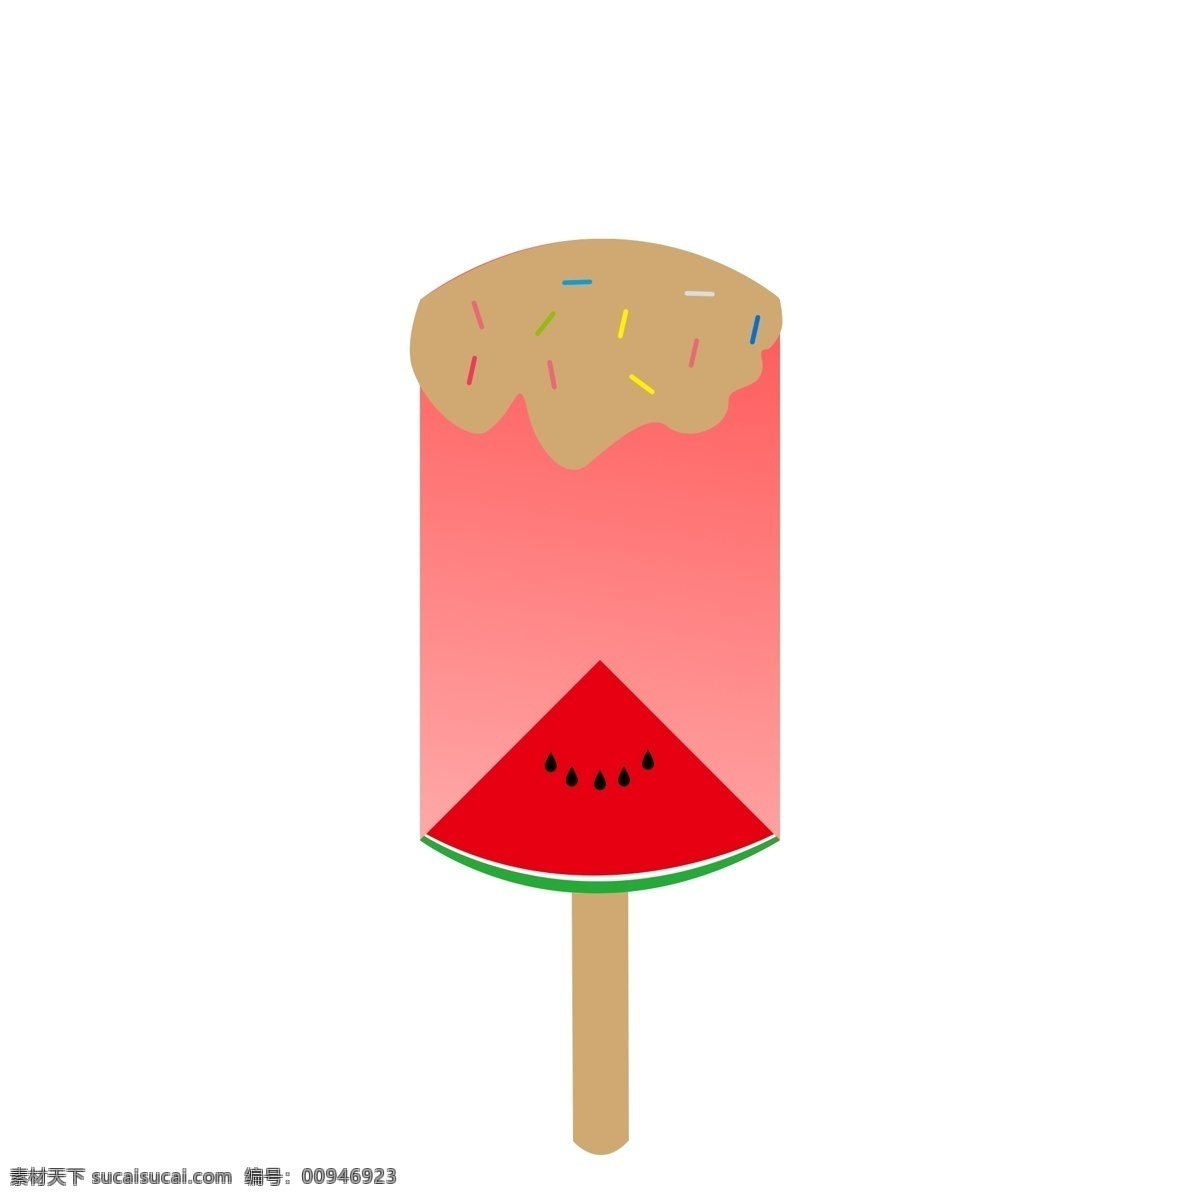 夏日 冰凉 西瓜 冰淇淋 夏天 巧克力 纳凉 避暑 美食 食物 冰棒 卡通插画 扁平化 红色 简单